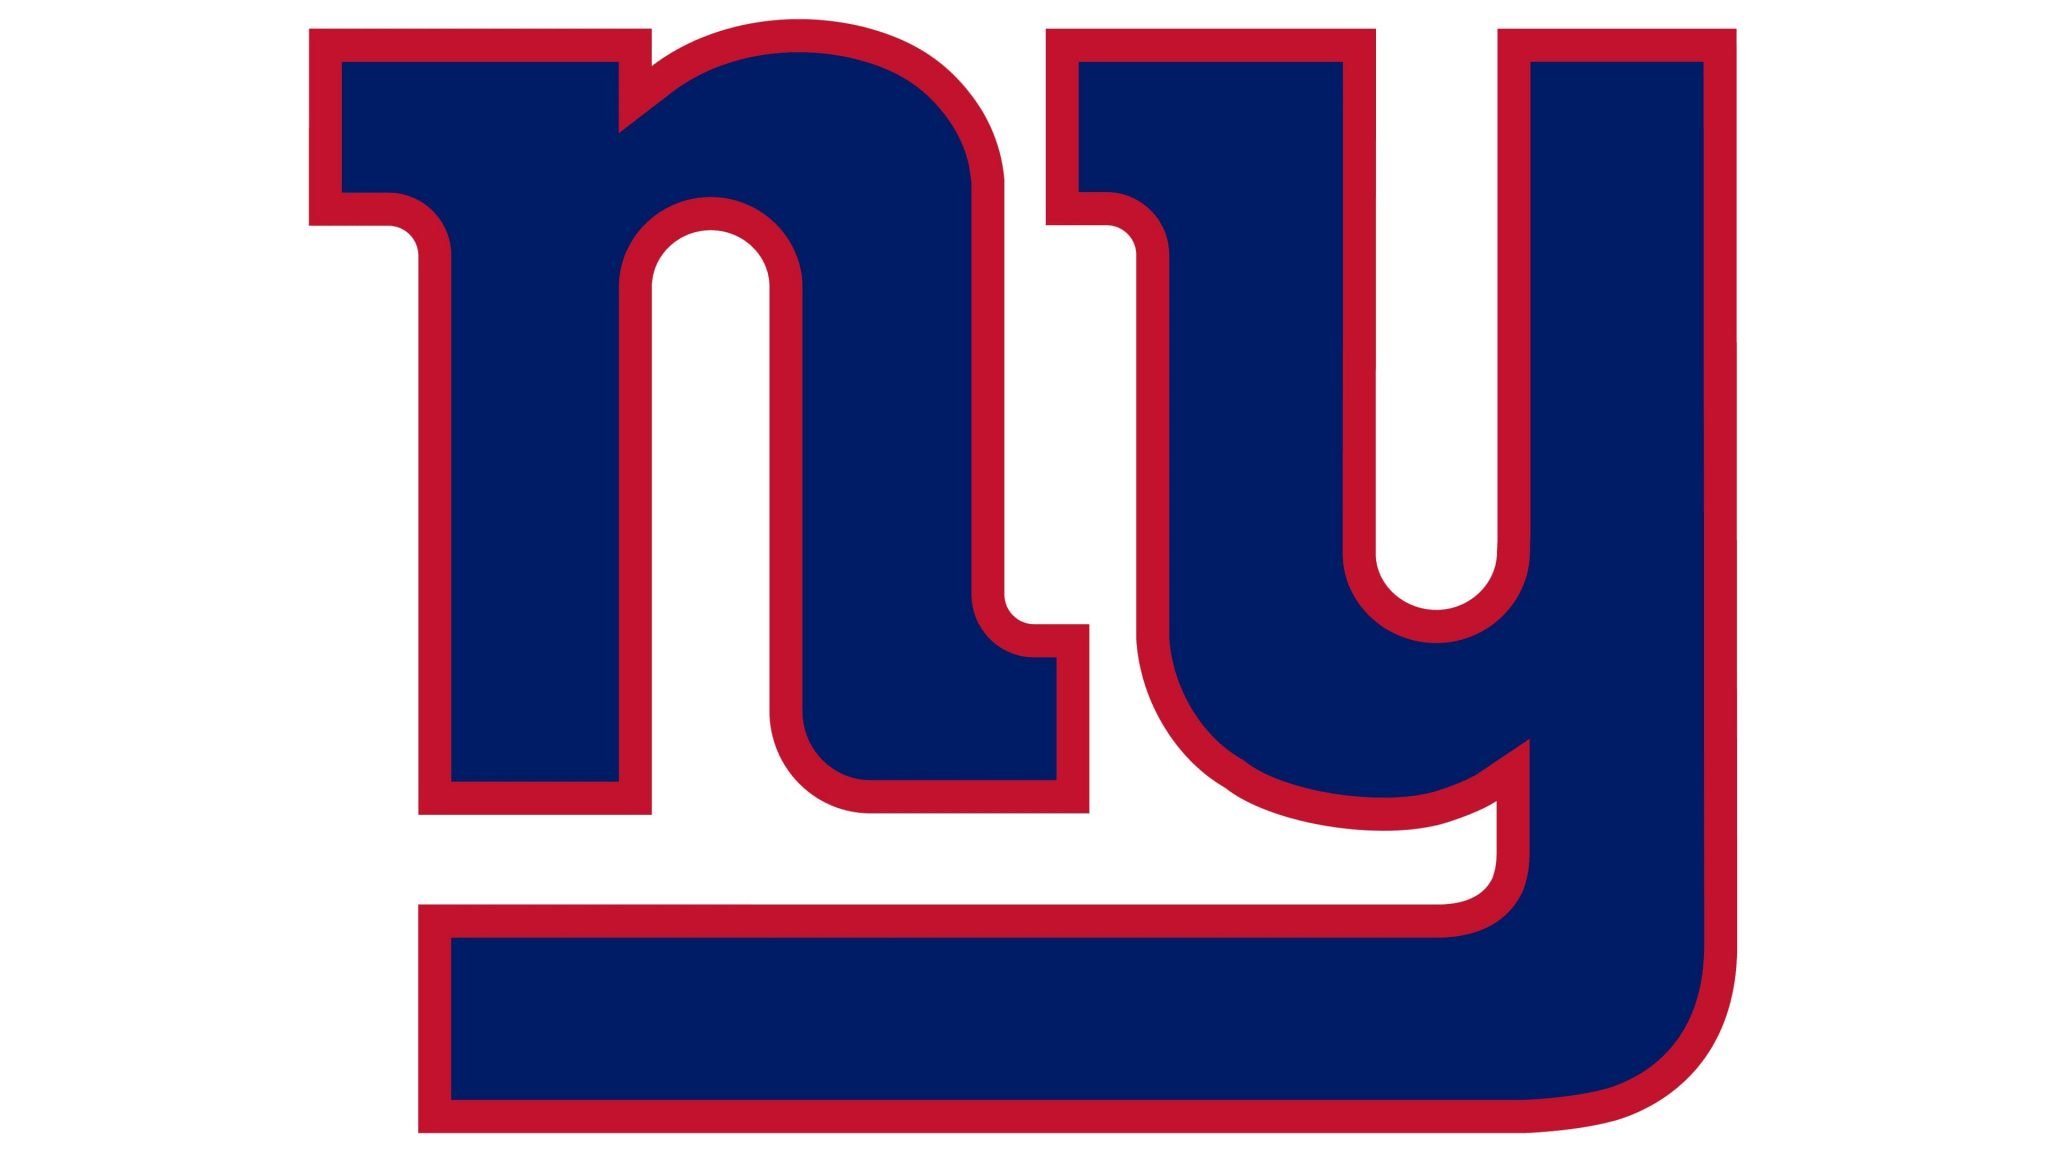 New York Giants logo.